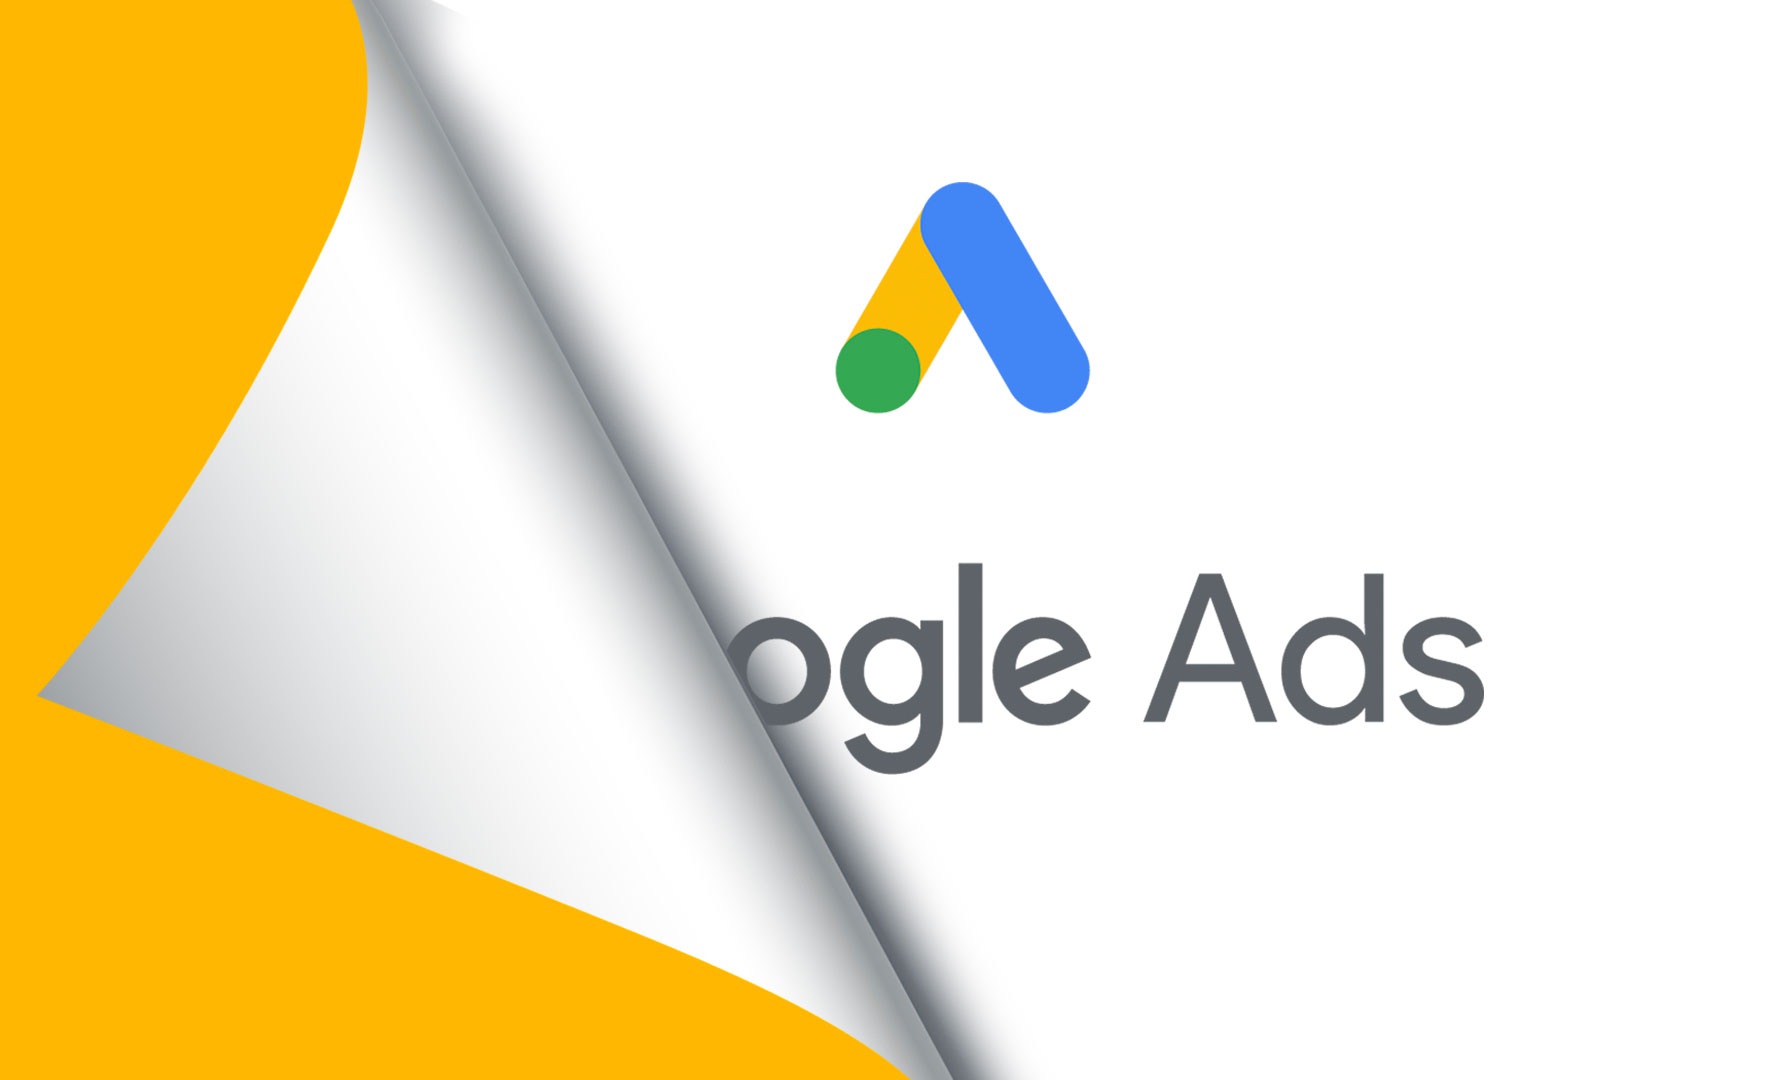 Các dạng quảng cáo Google Ads